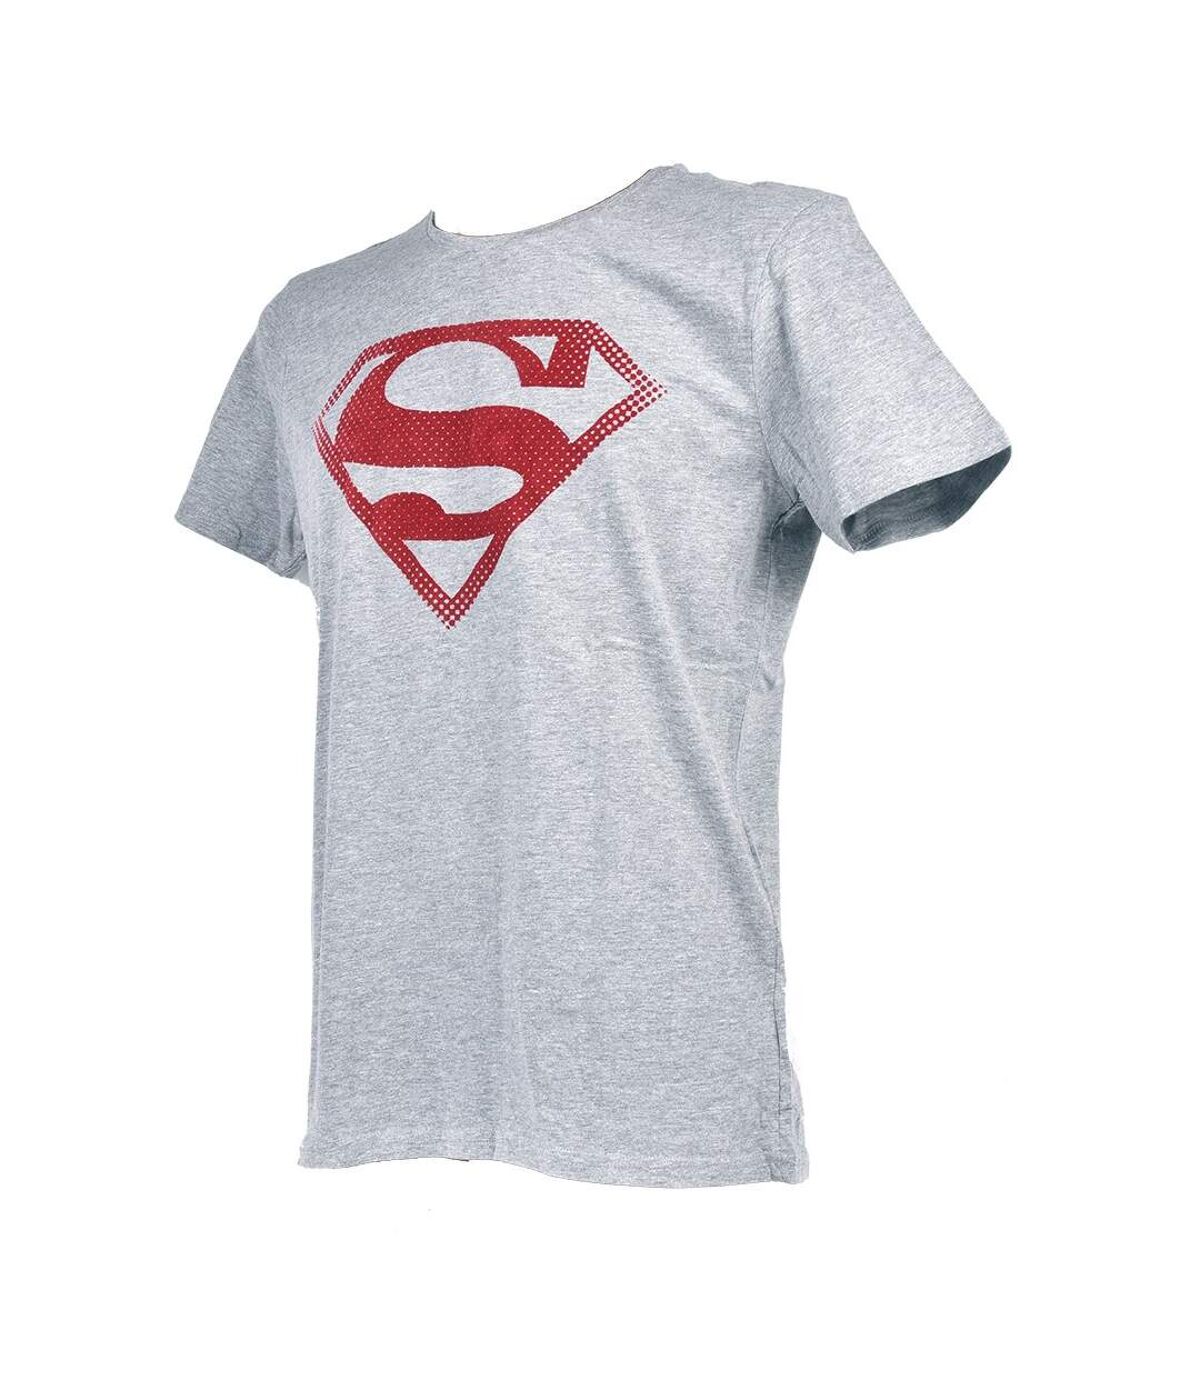 T shirt homme Licence Superhéros: Superman, Batman, Avengers..- Assortiment modèles photos selon arrivages- Er3533 Superman Gris